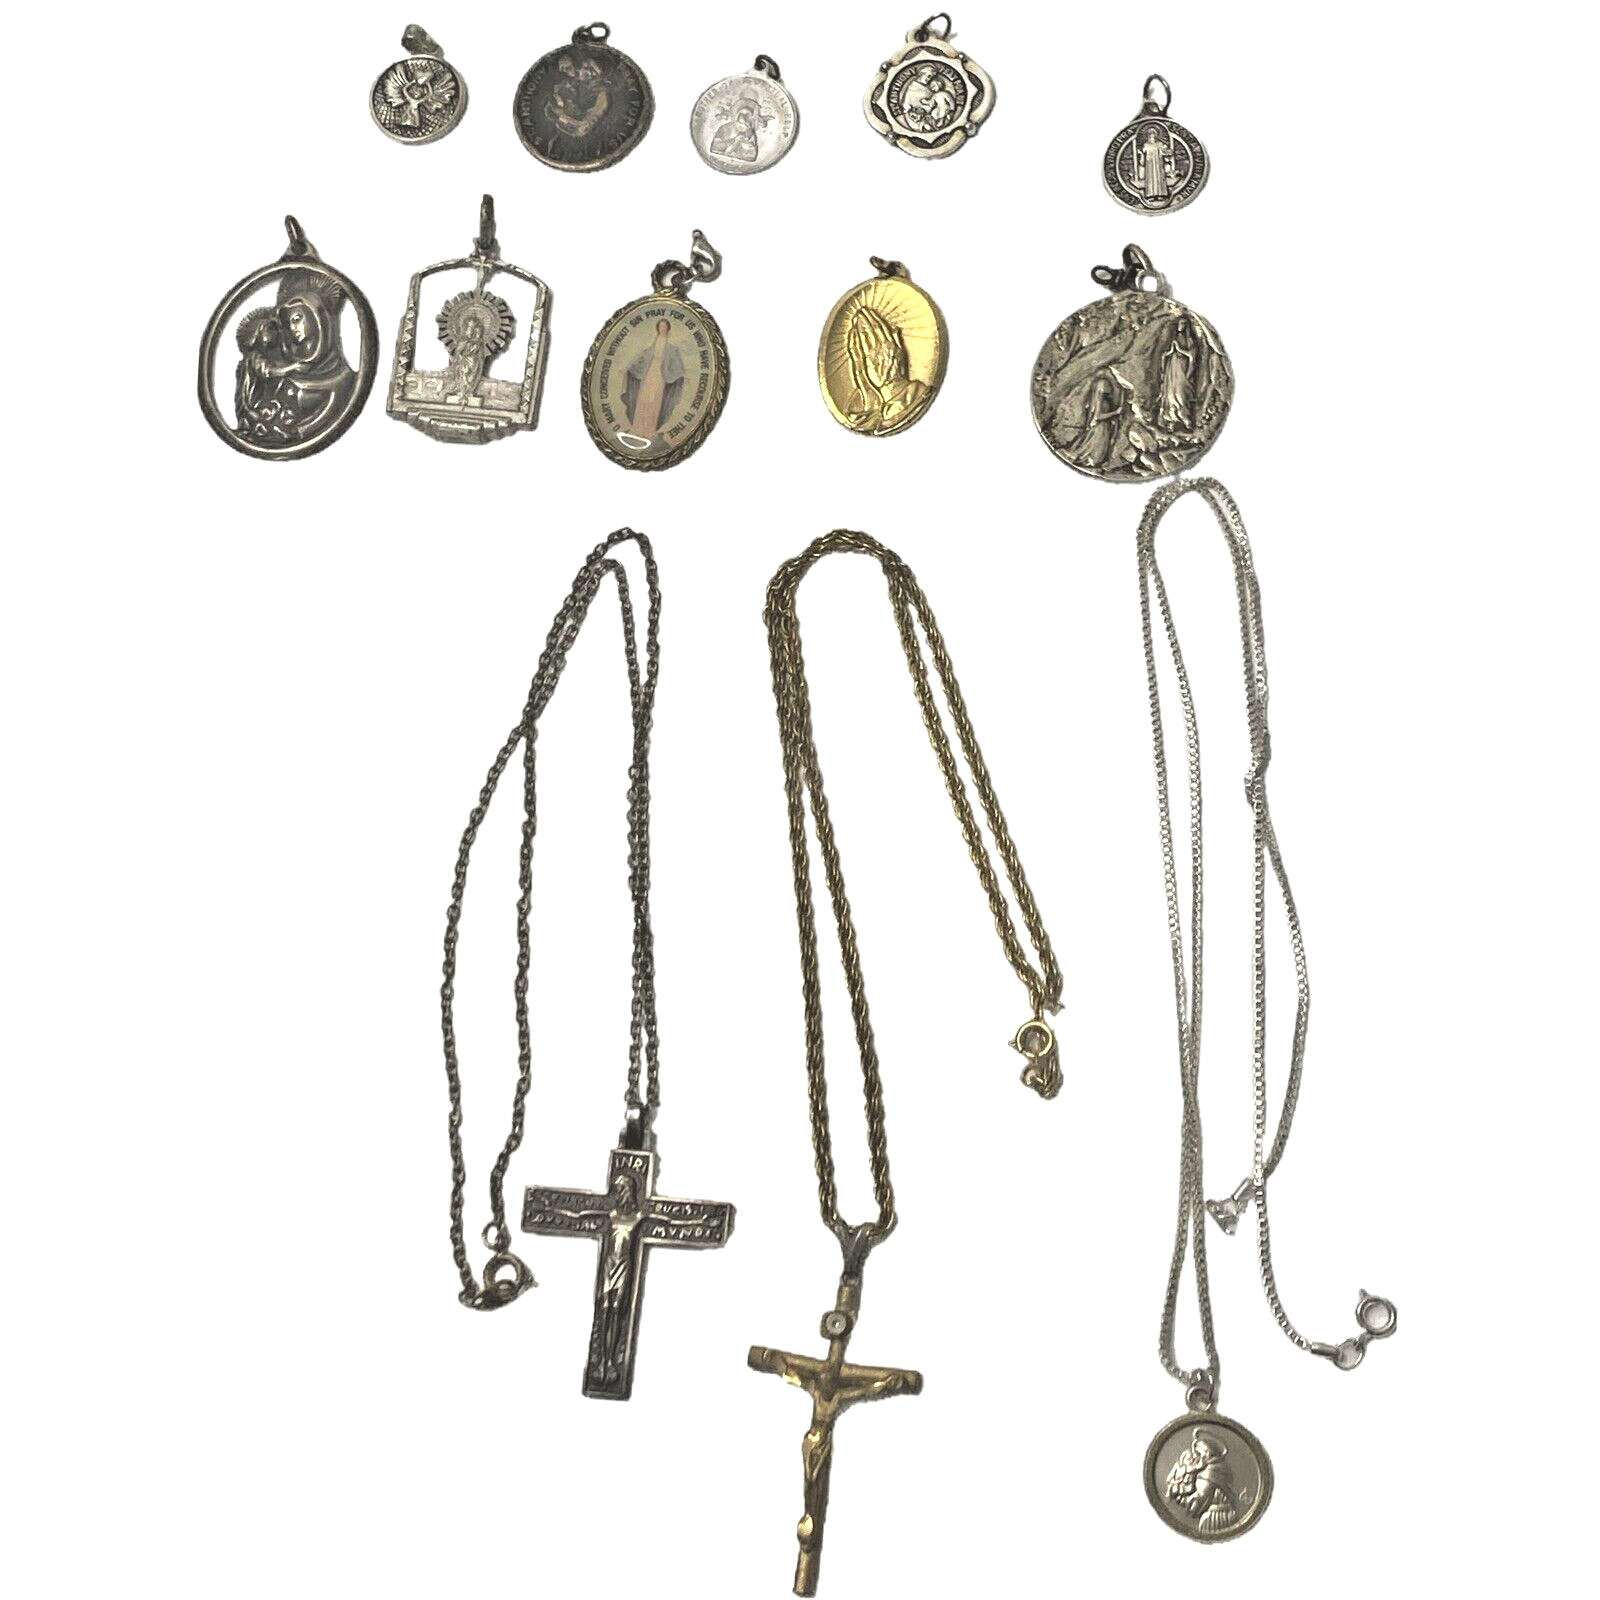 Vintage Religious Catholic Crucifix Necklace Jewelry lot